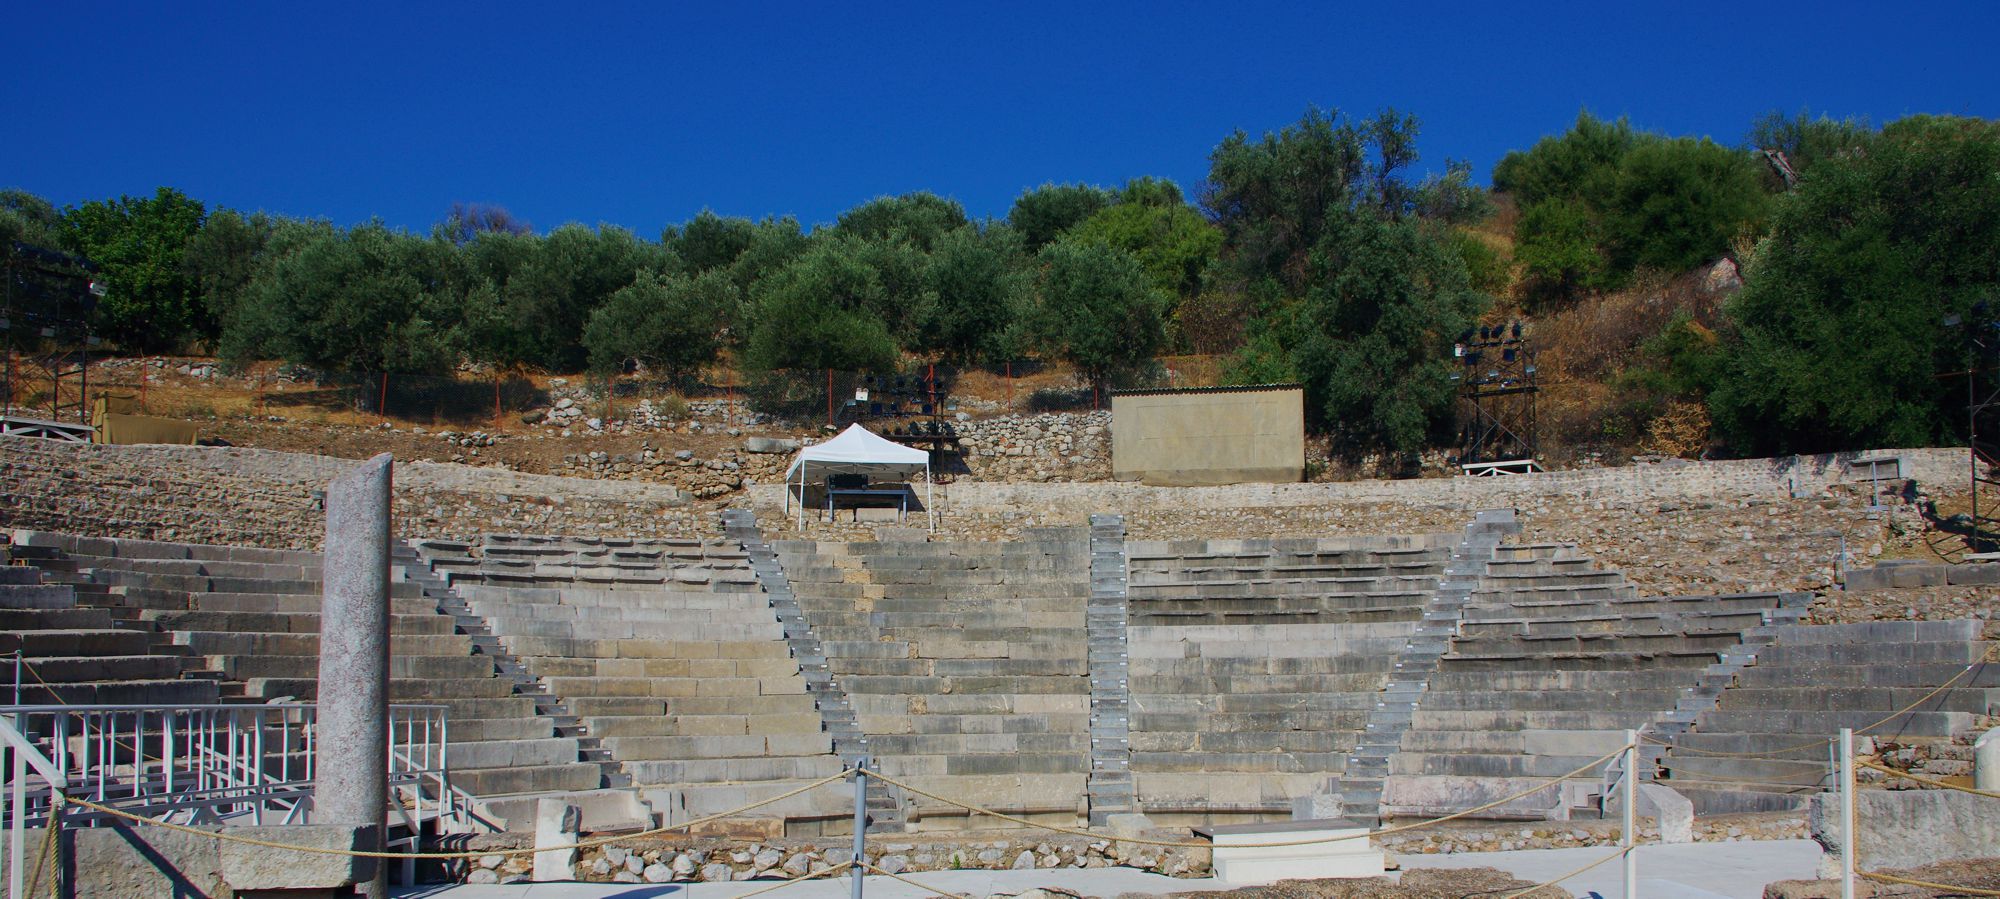 Επίδαυρος: Το Μικρό θέατρο αρχαίας Επιδαύρου